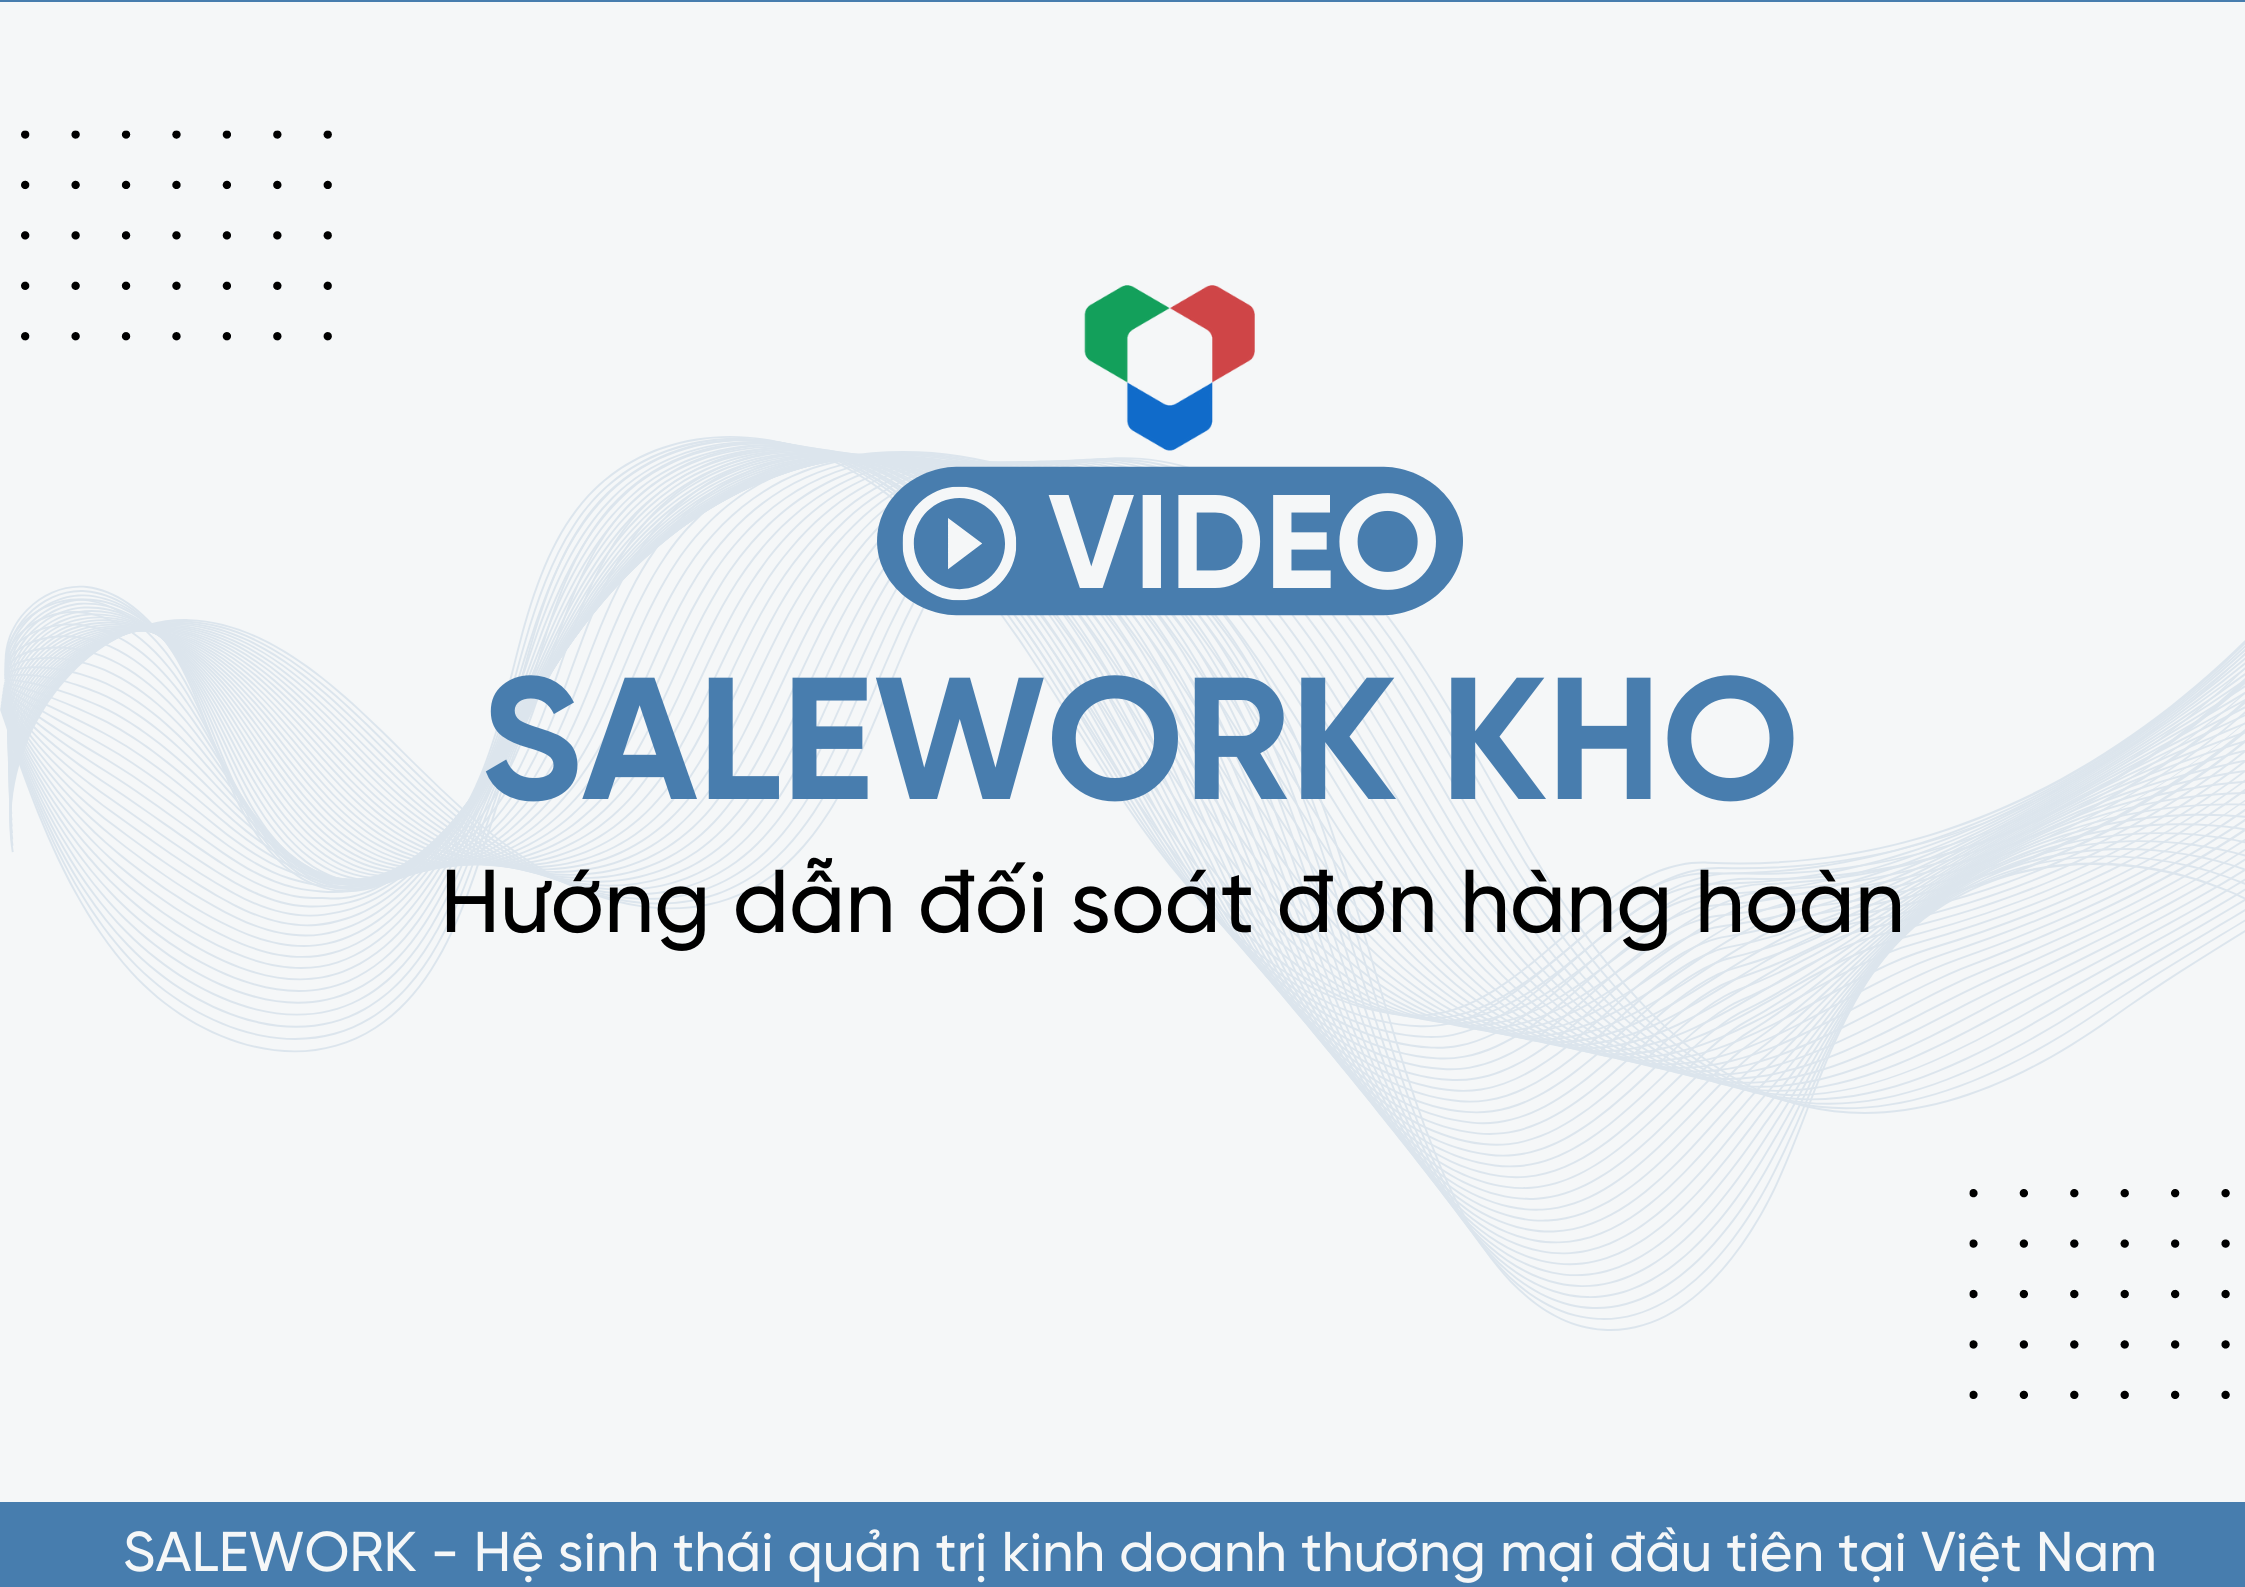 [VIDEO] Hướng dẫn đối soát đơn hàng hoàn tại Salework Kho - 16